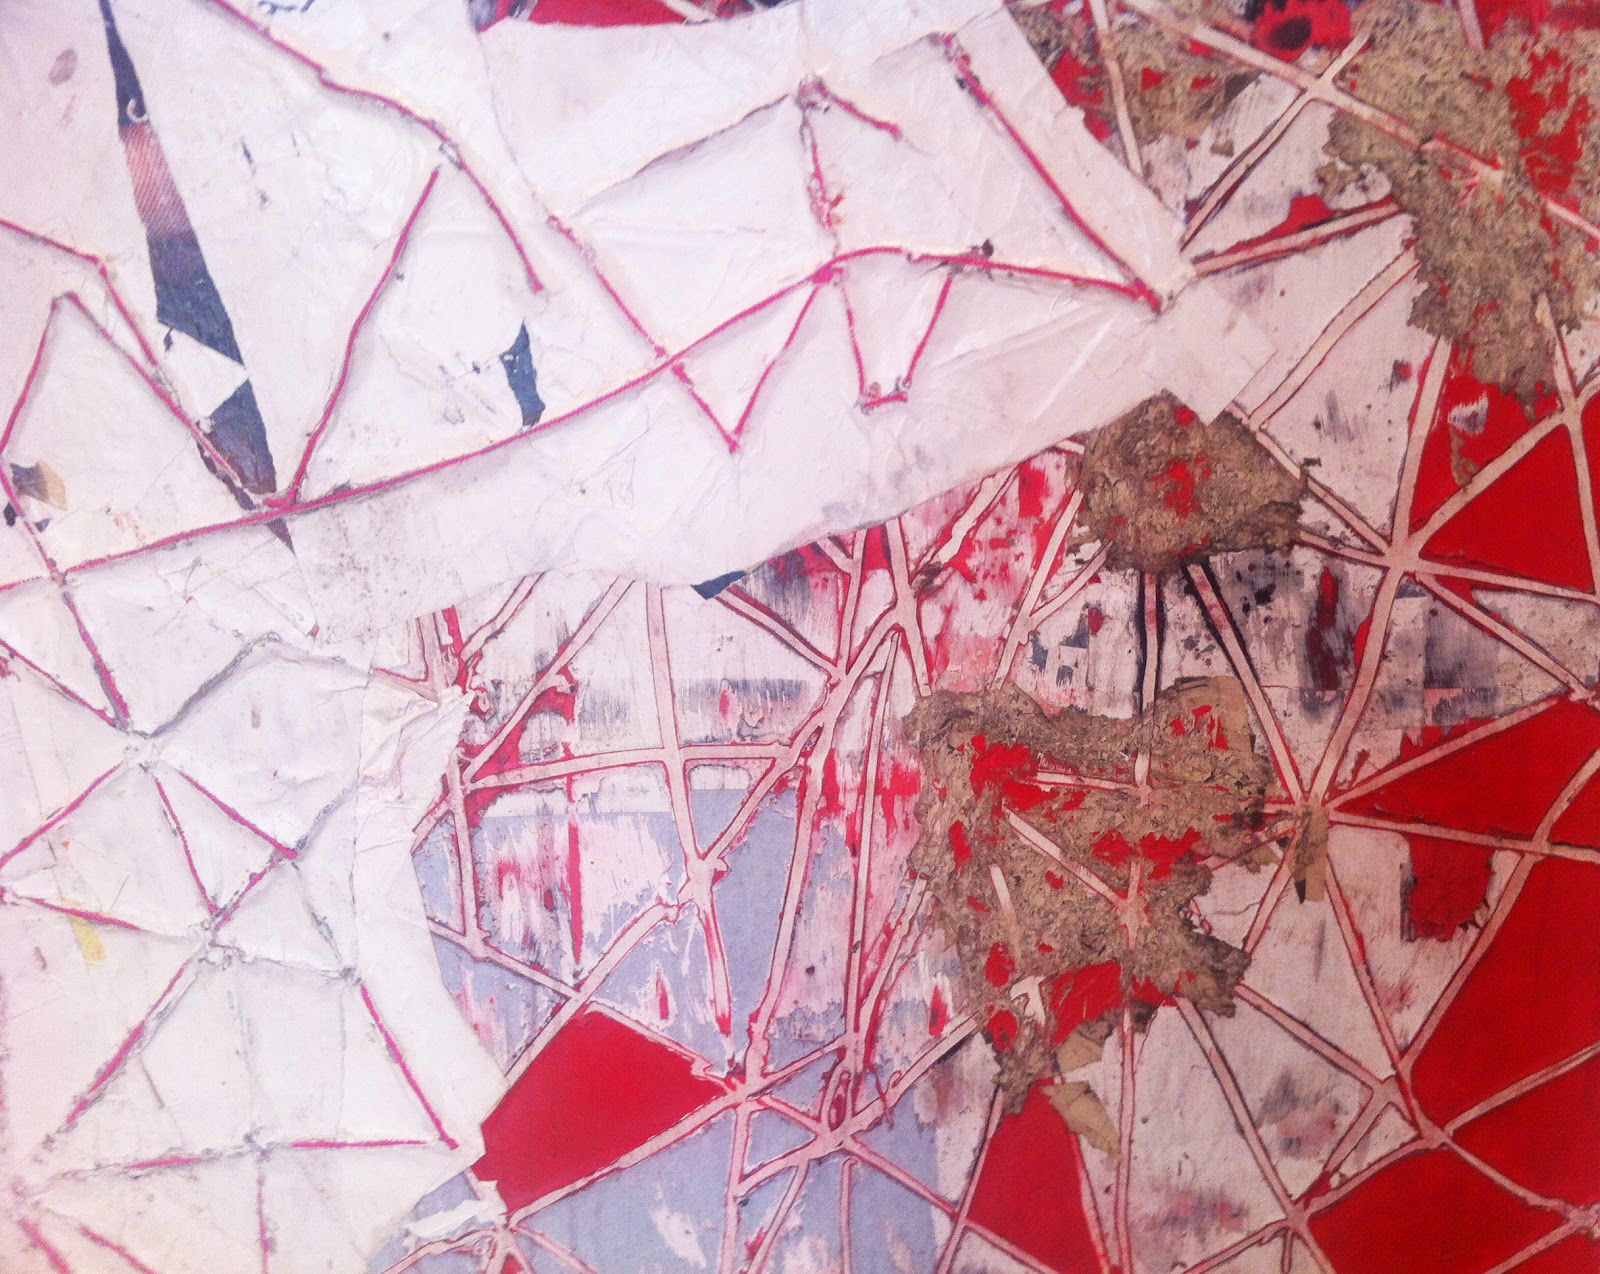 Red Painting, 2009. Марк Брэдфорд (Mark Bradford) - современный американский художник. Современное искусство США